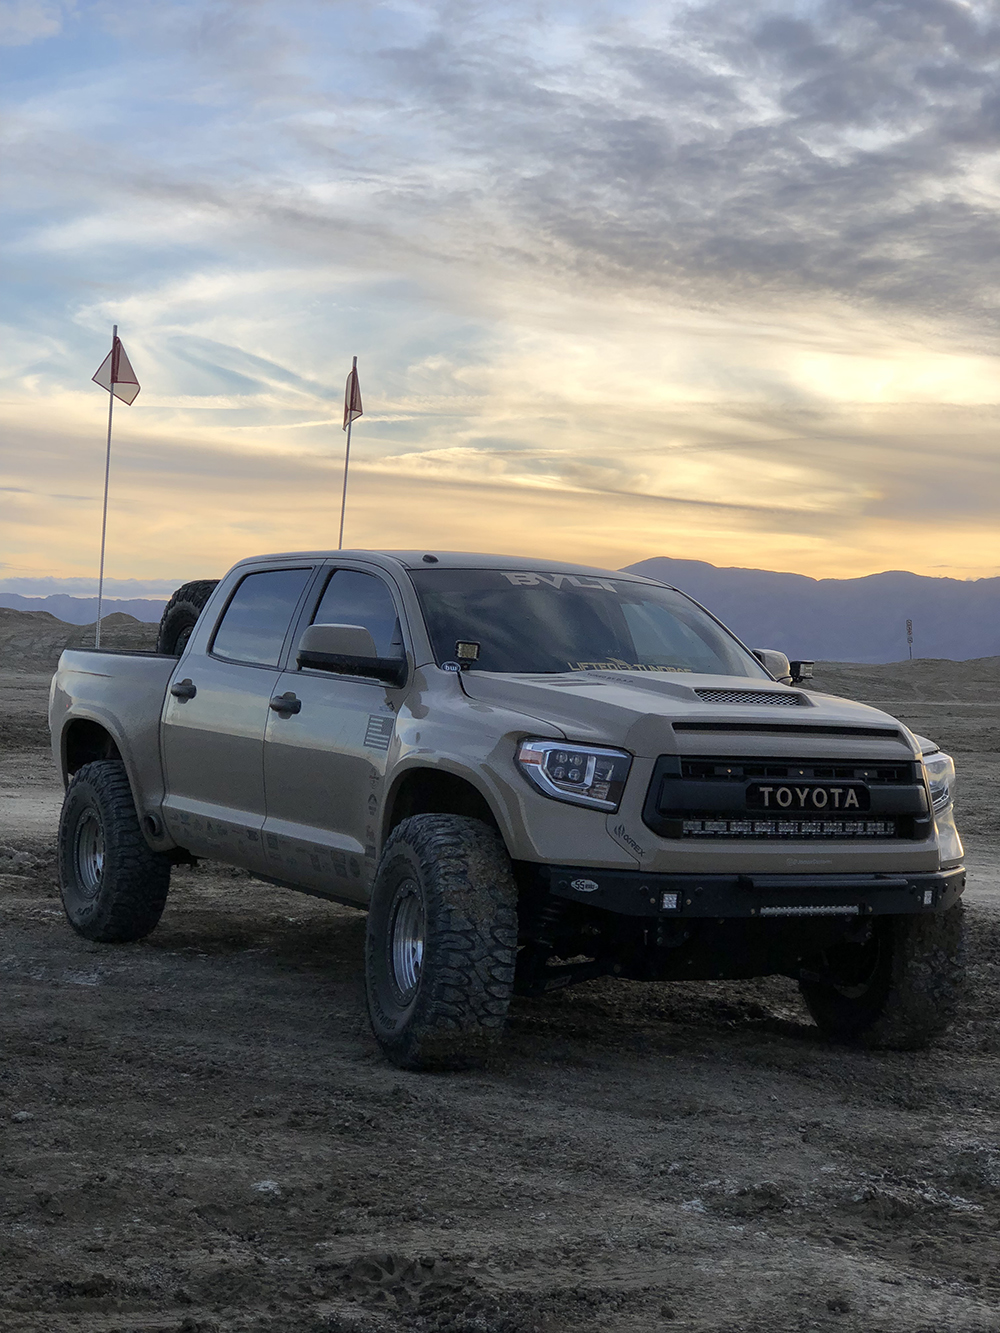 Toyota Tundra desert pre runner truck